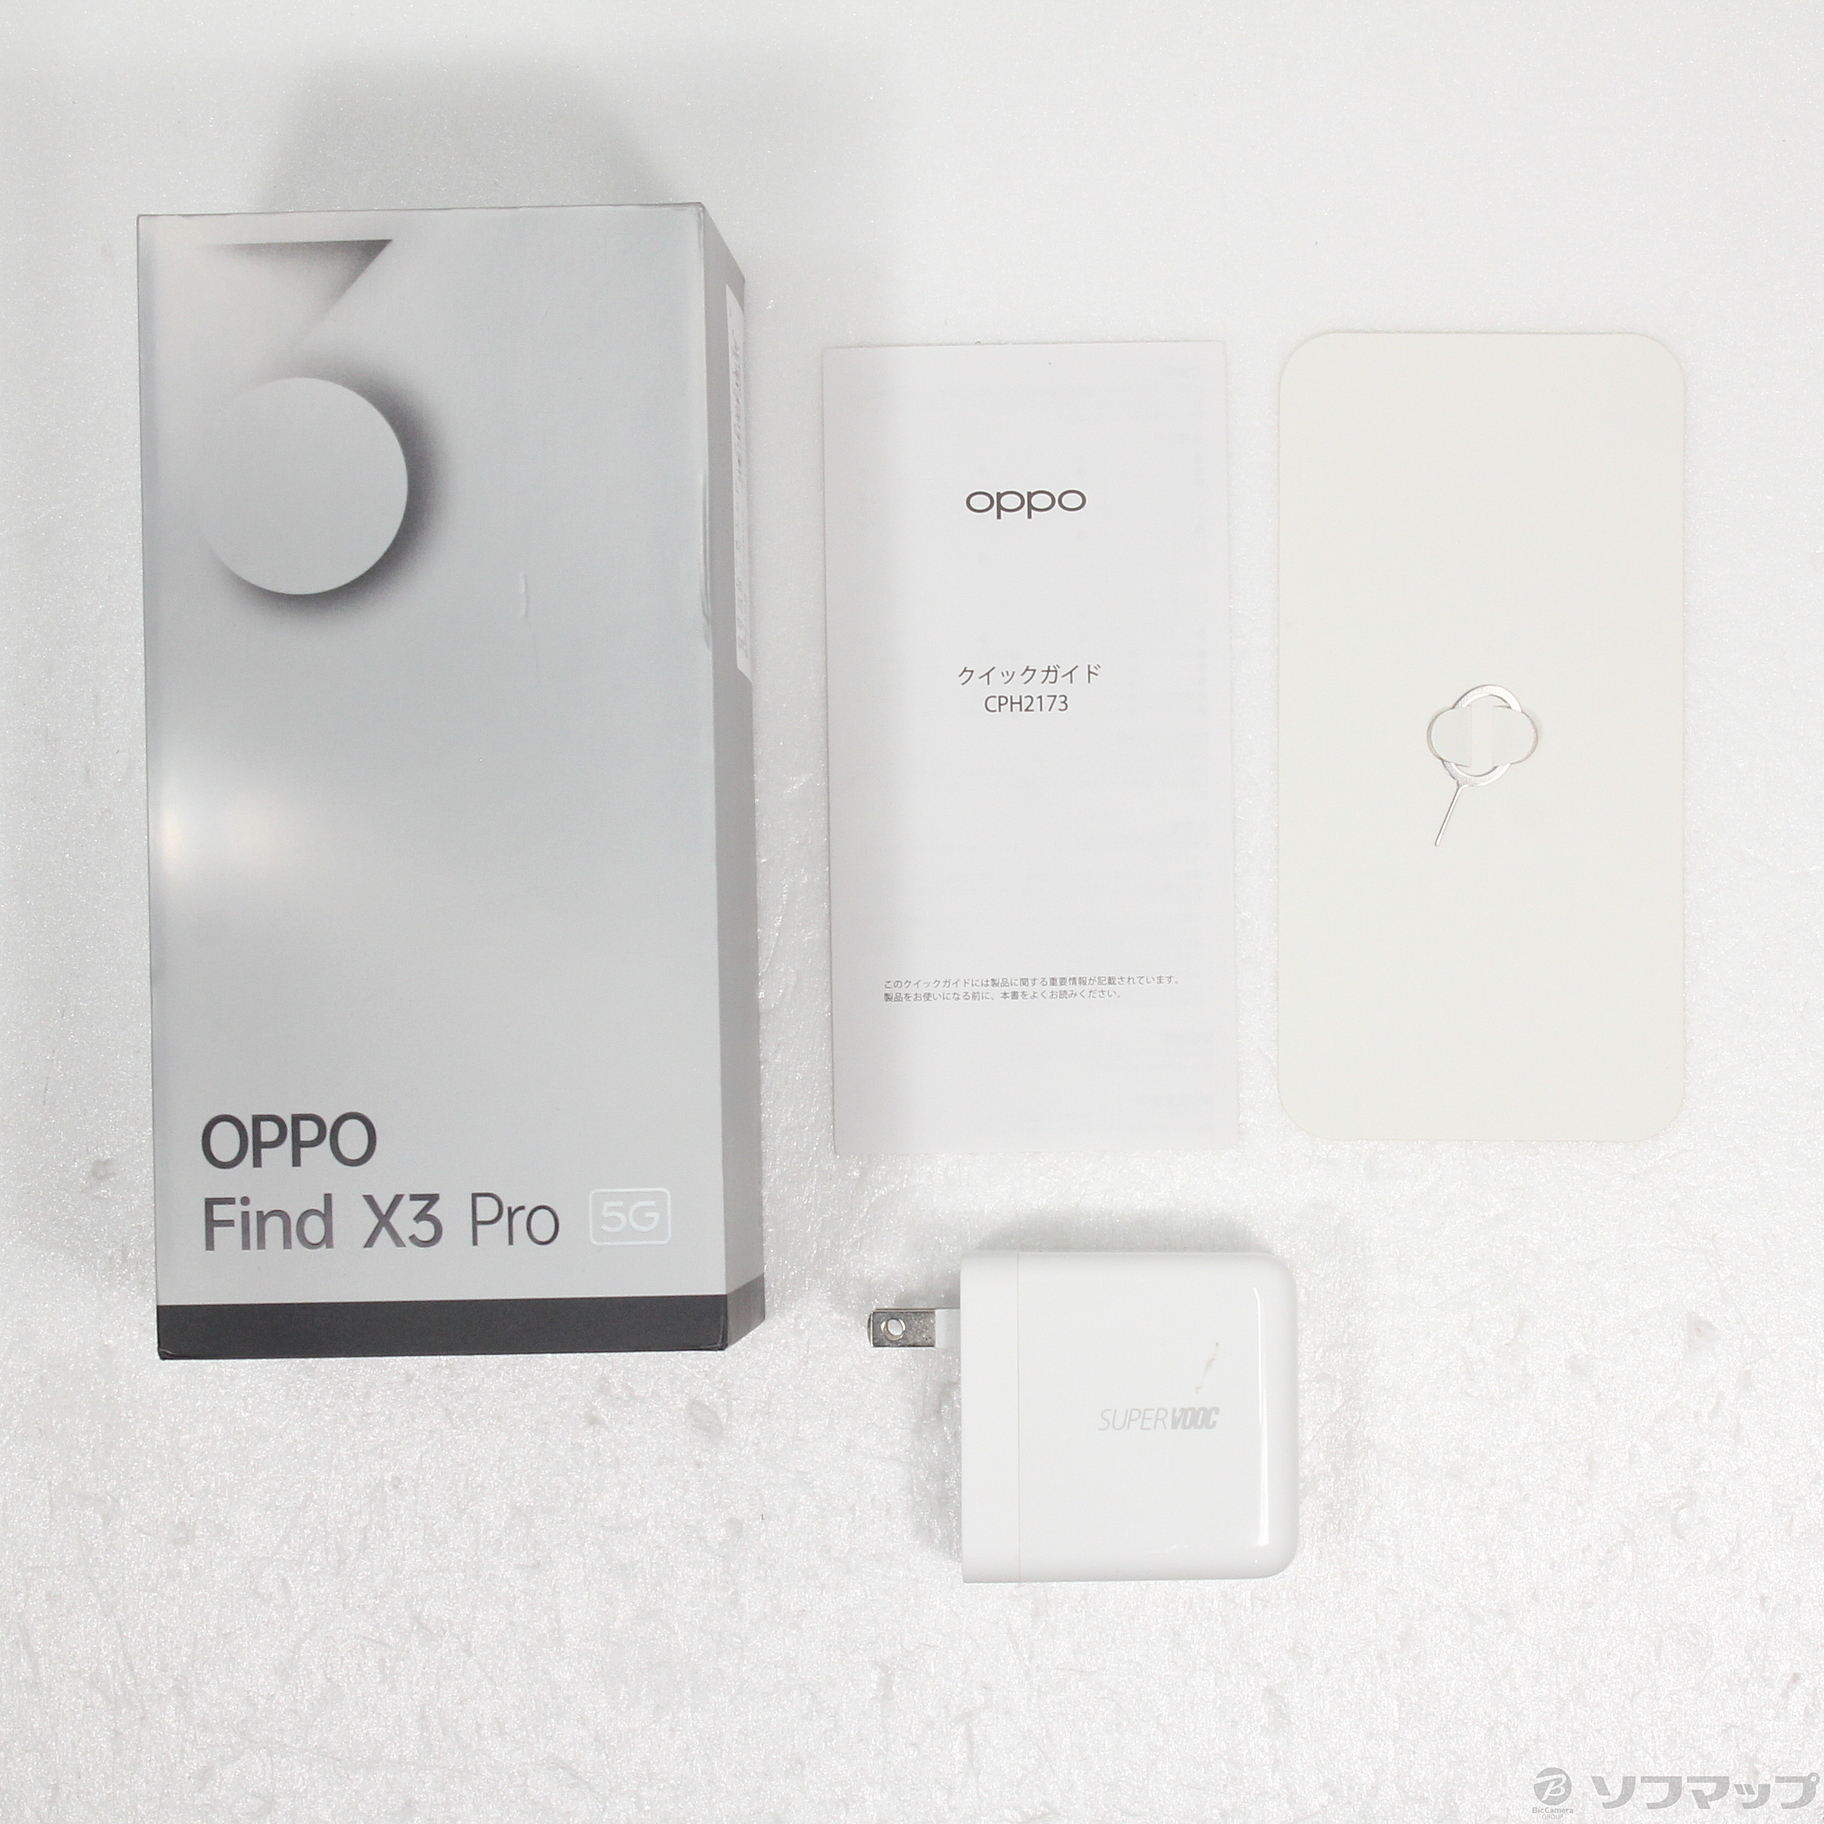 新品未使用未開封 国内版simフリー OPPO Find X3 Pro ホワイト